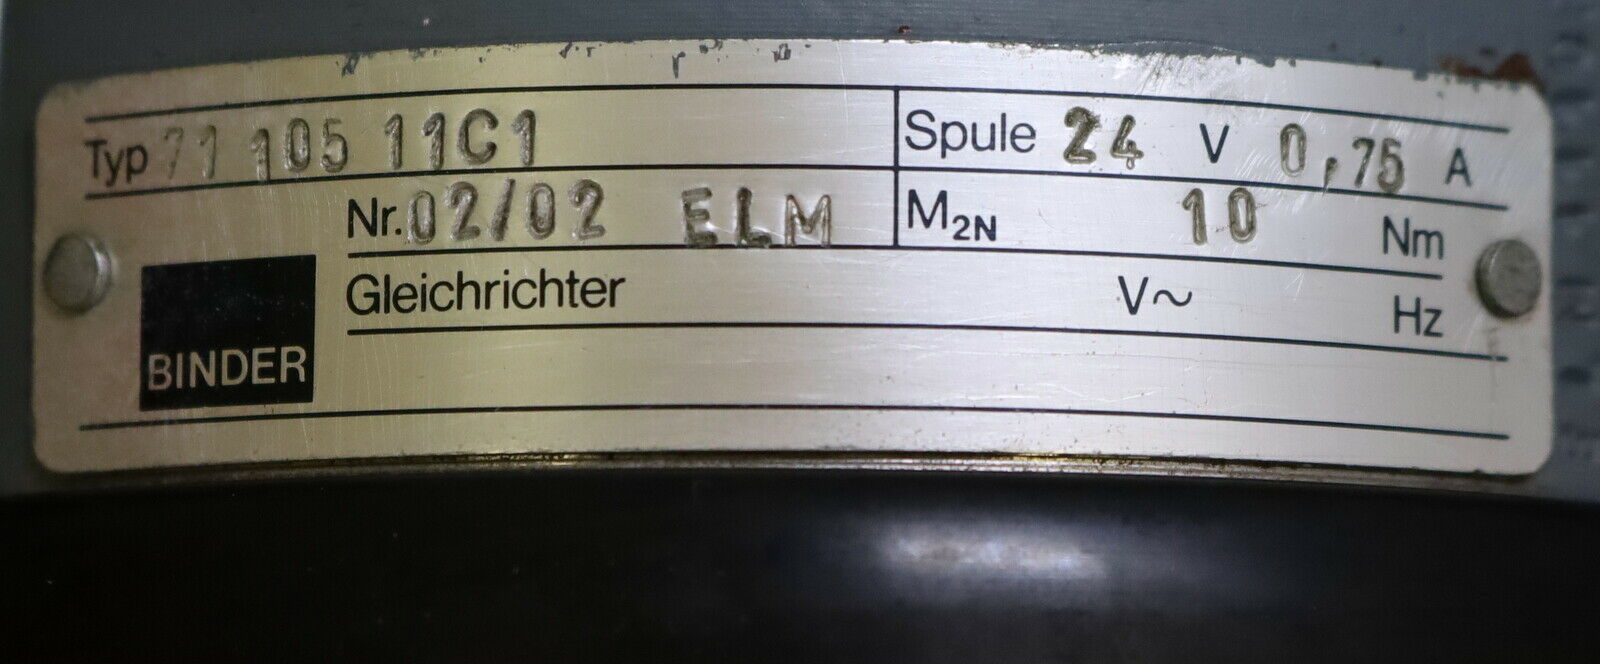 BINDER Federdruck-Lamellenbremse + Gleichrichter ELM 02/02 Typ 71 105 11 C1